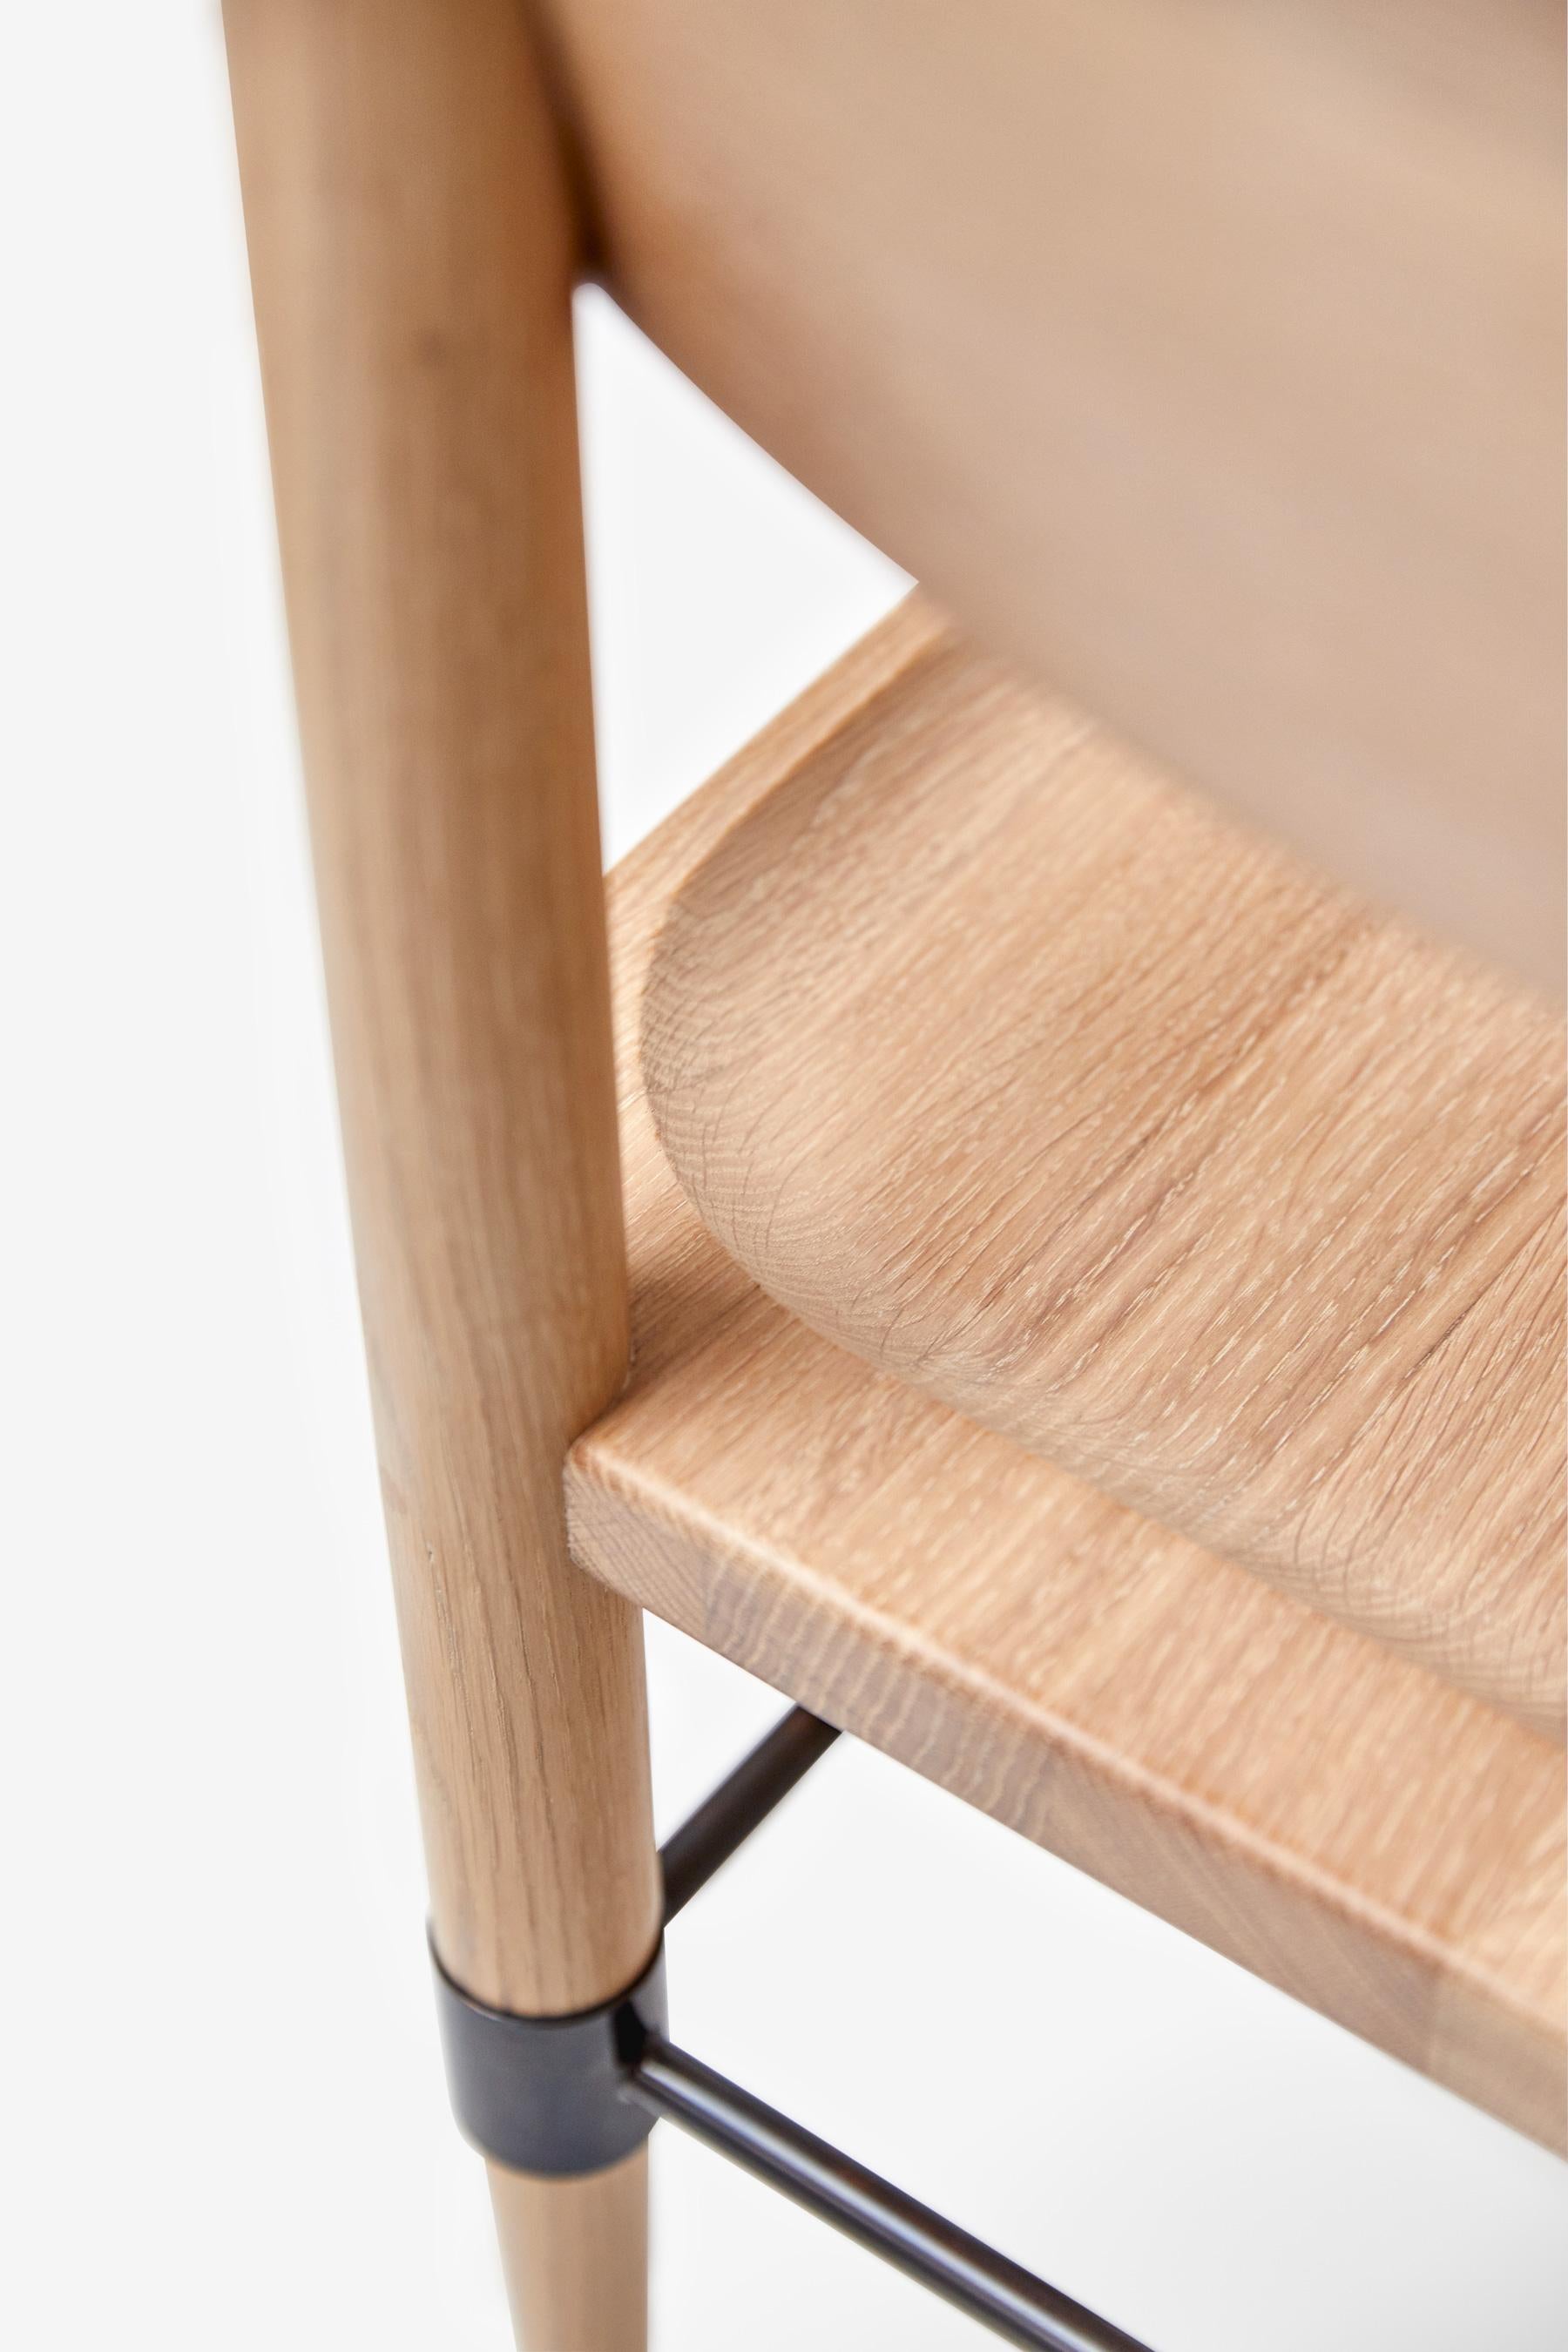 MG101 Dining chair in light oak by Malte Gormsen Design by Space Copenhagen For Sale 2